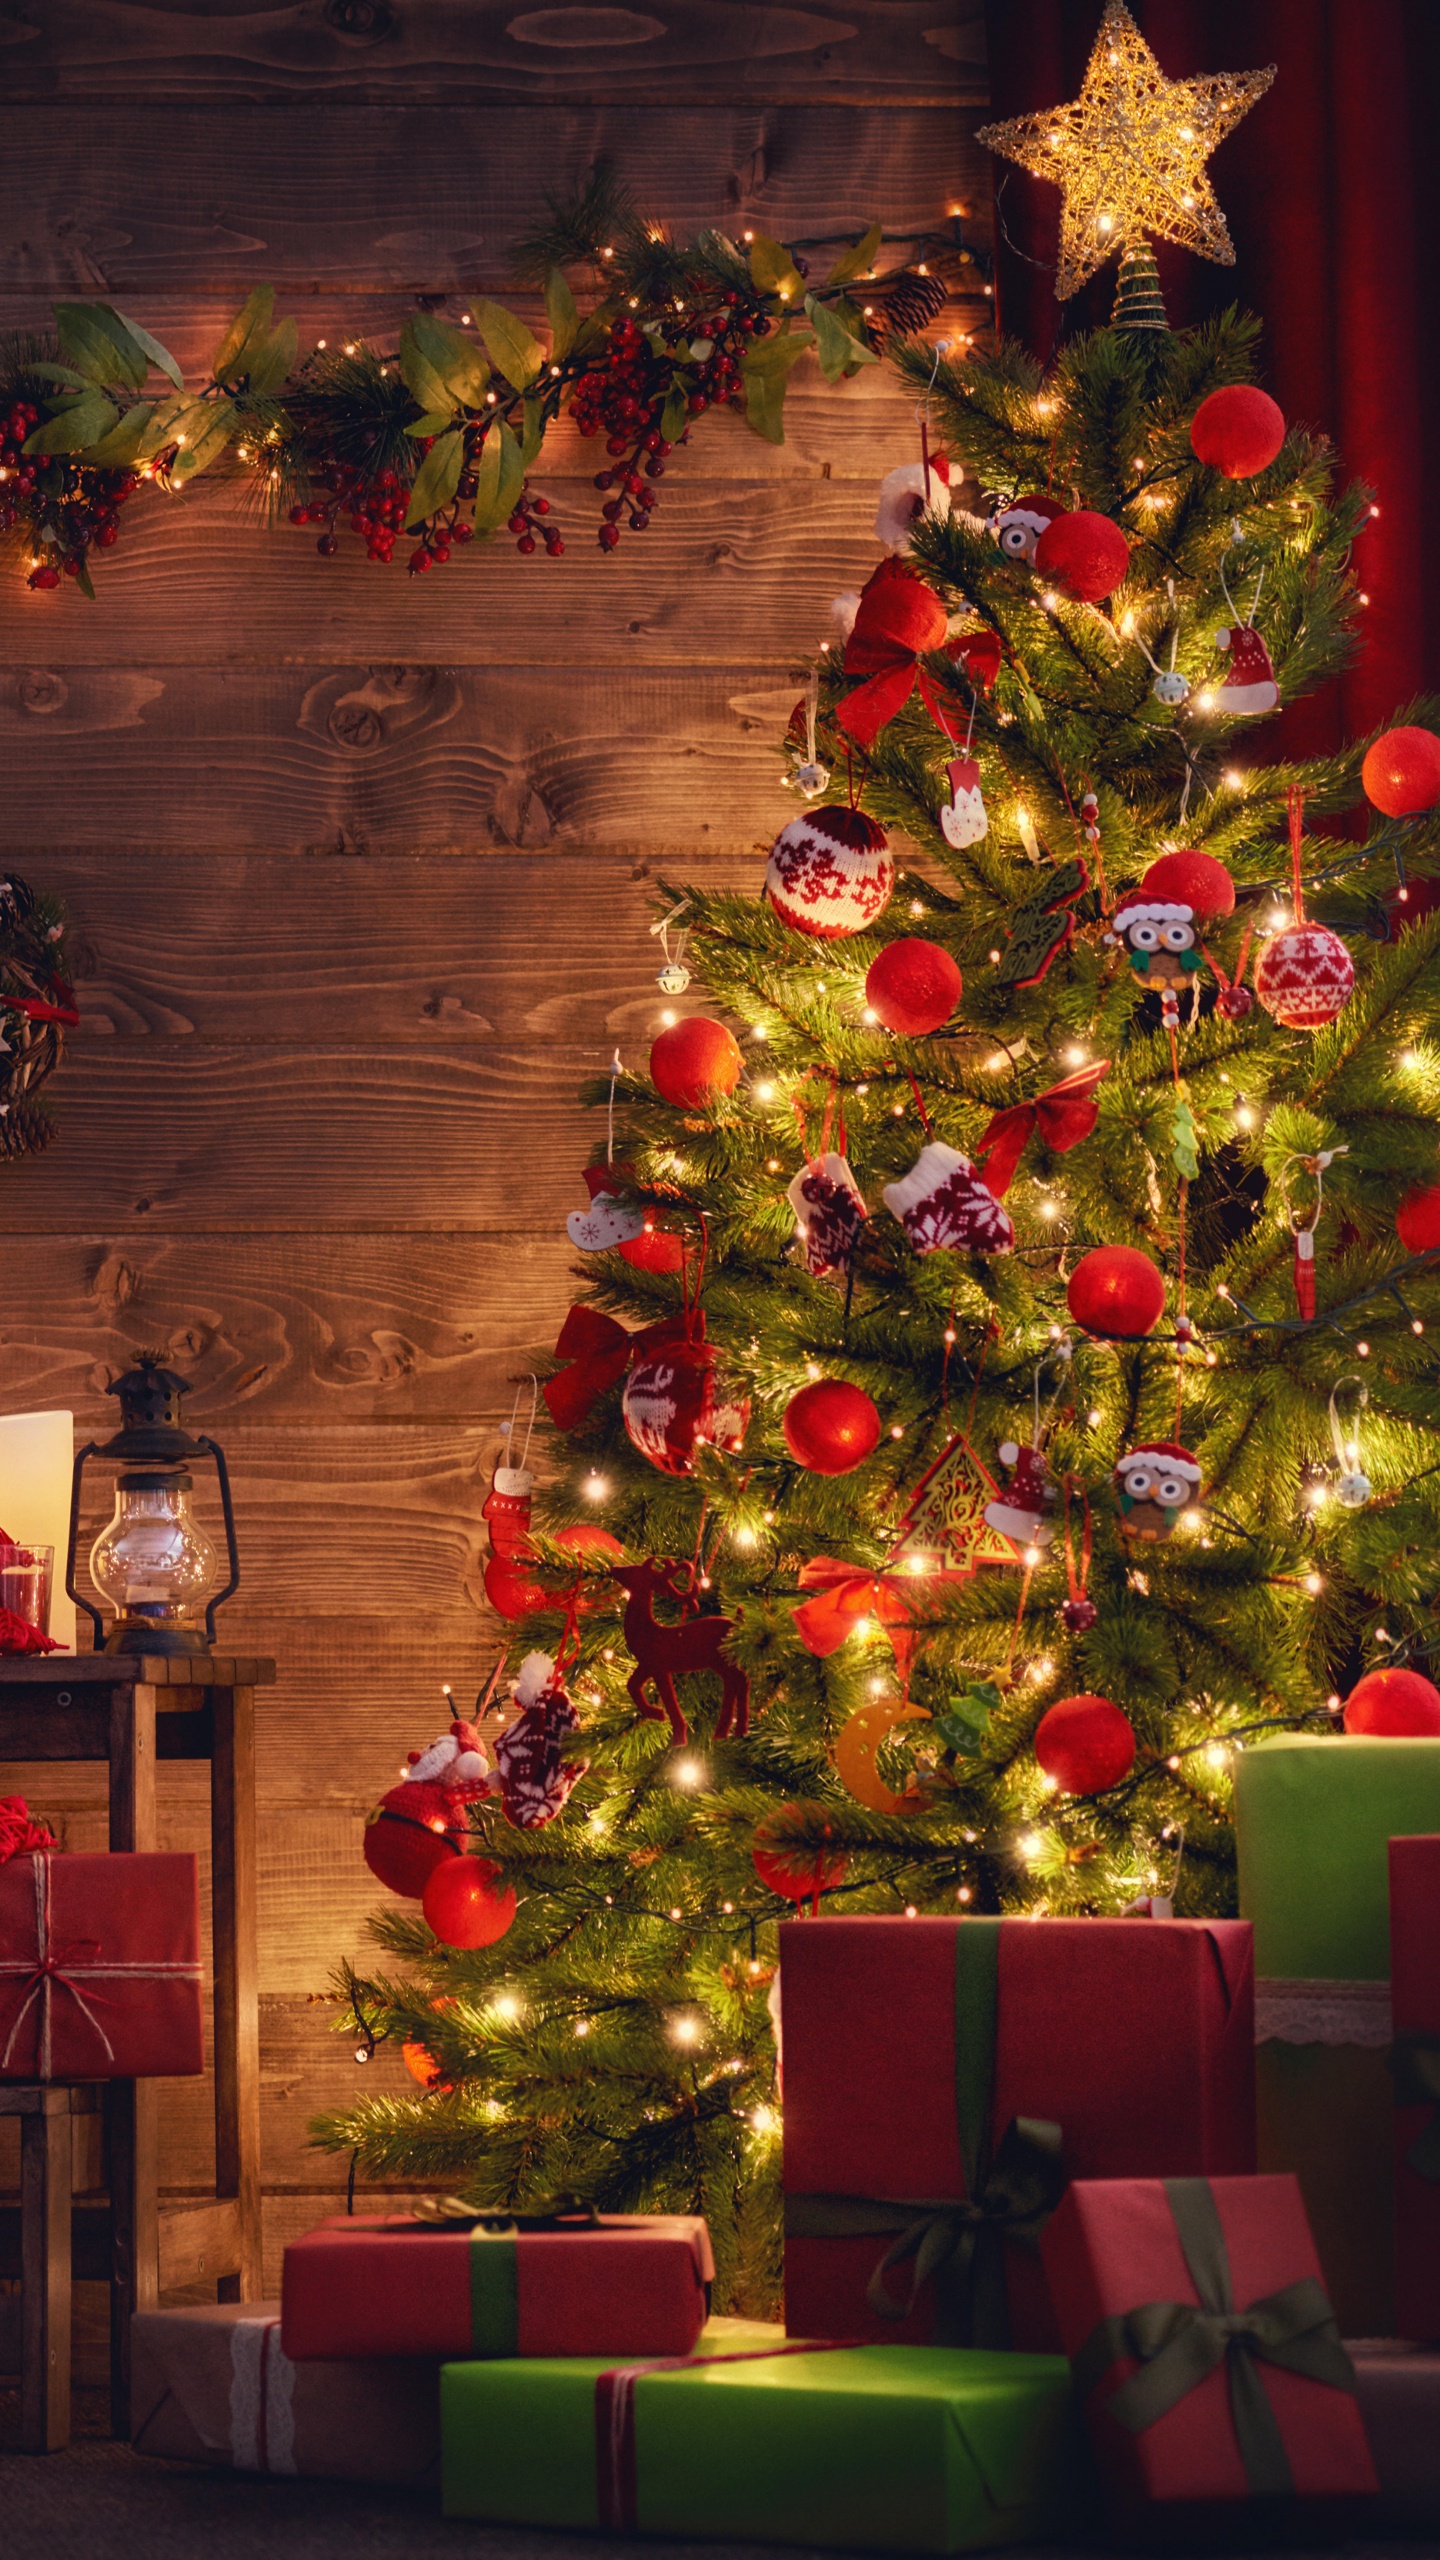 Weihnachtsbaum, Weihnachten, Weihnachtsdekoration, Weihnachtsbeleuchtung, Hölzerner Weihnachts-Adventskalender. Wallpaper in 1440x2560 Resolution